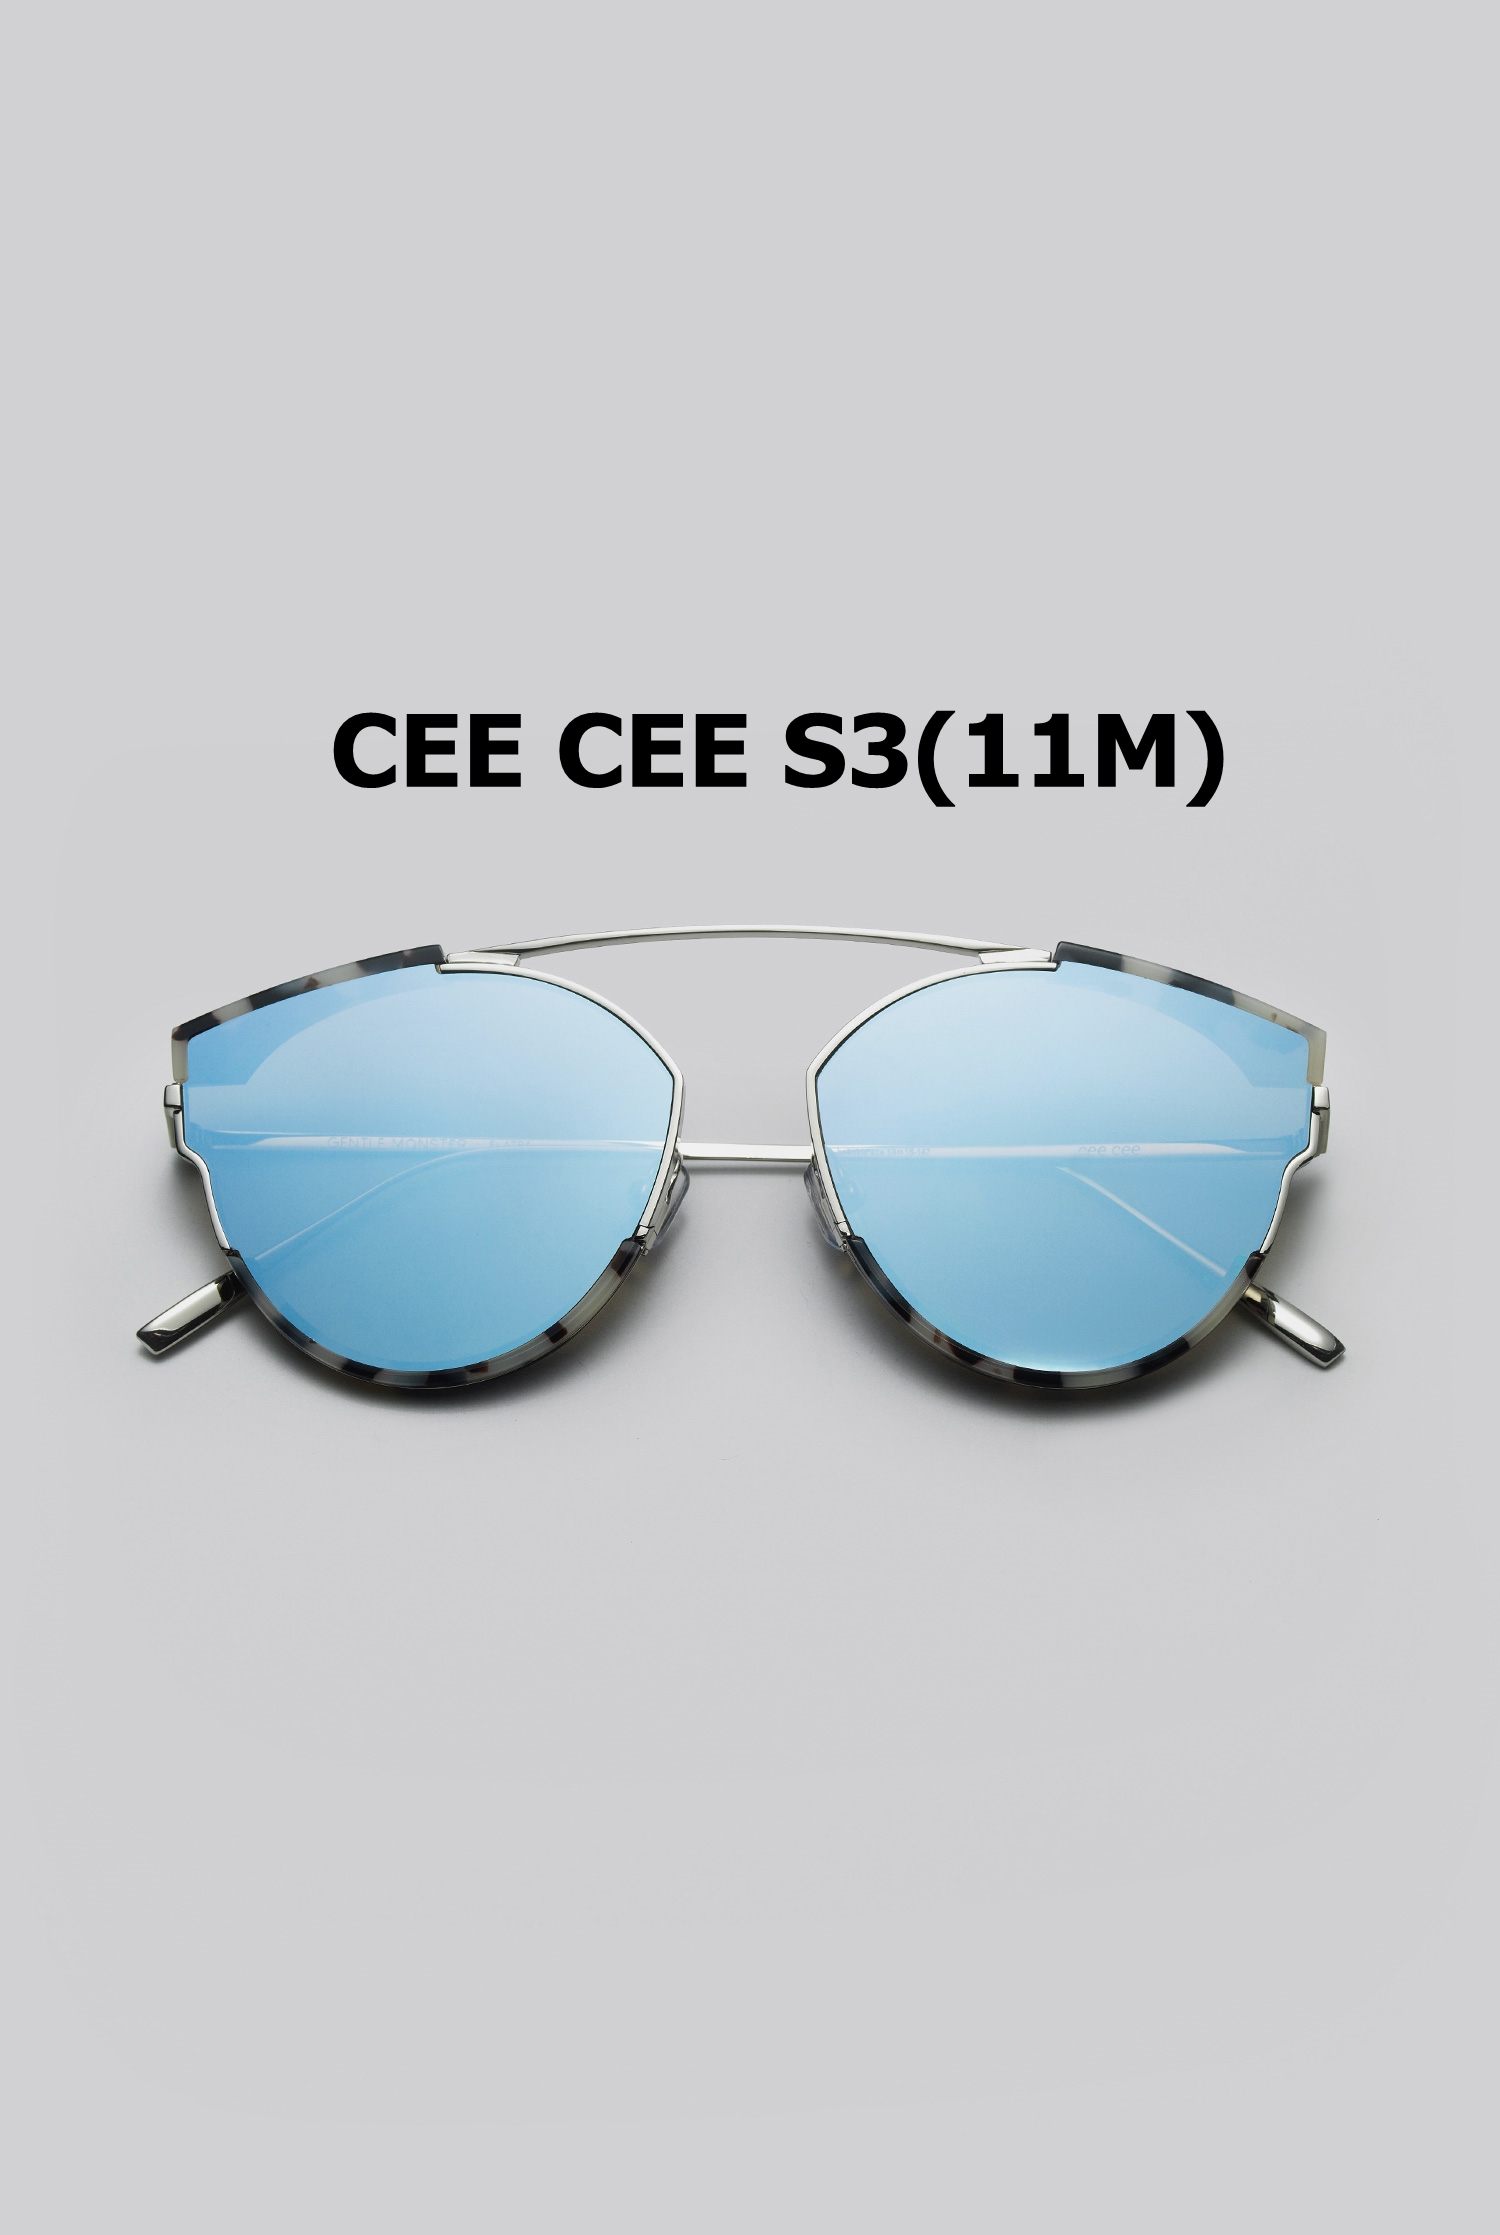 CEE CEE S3(11M)